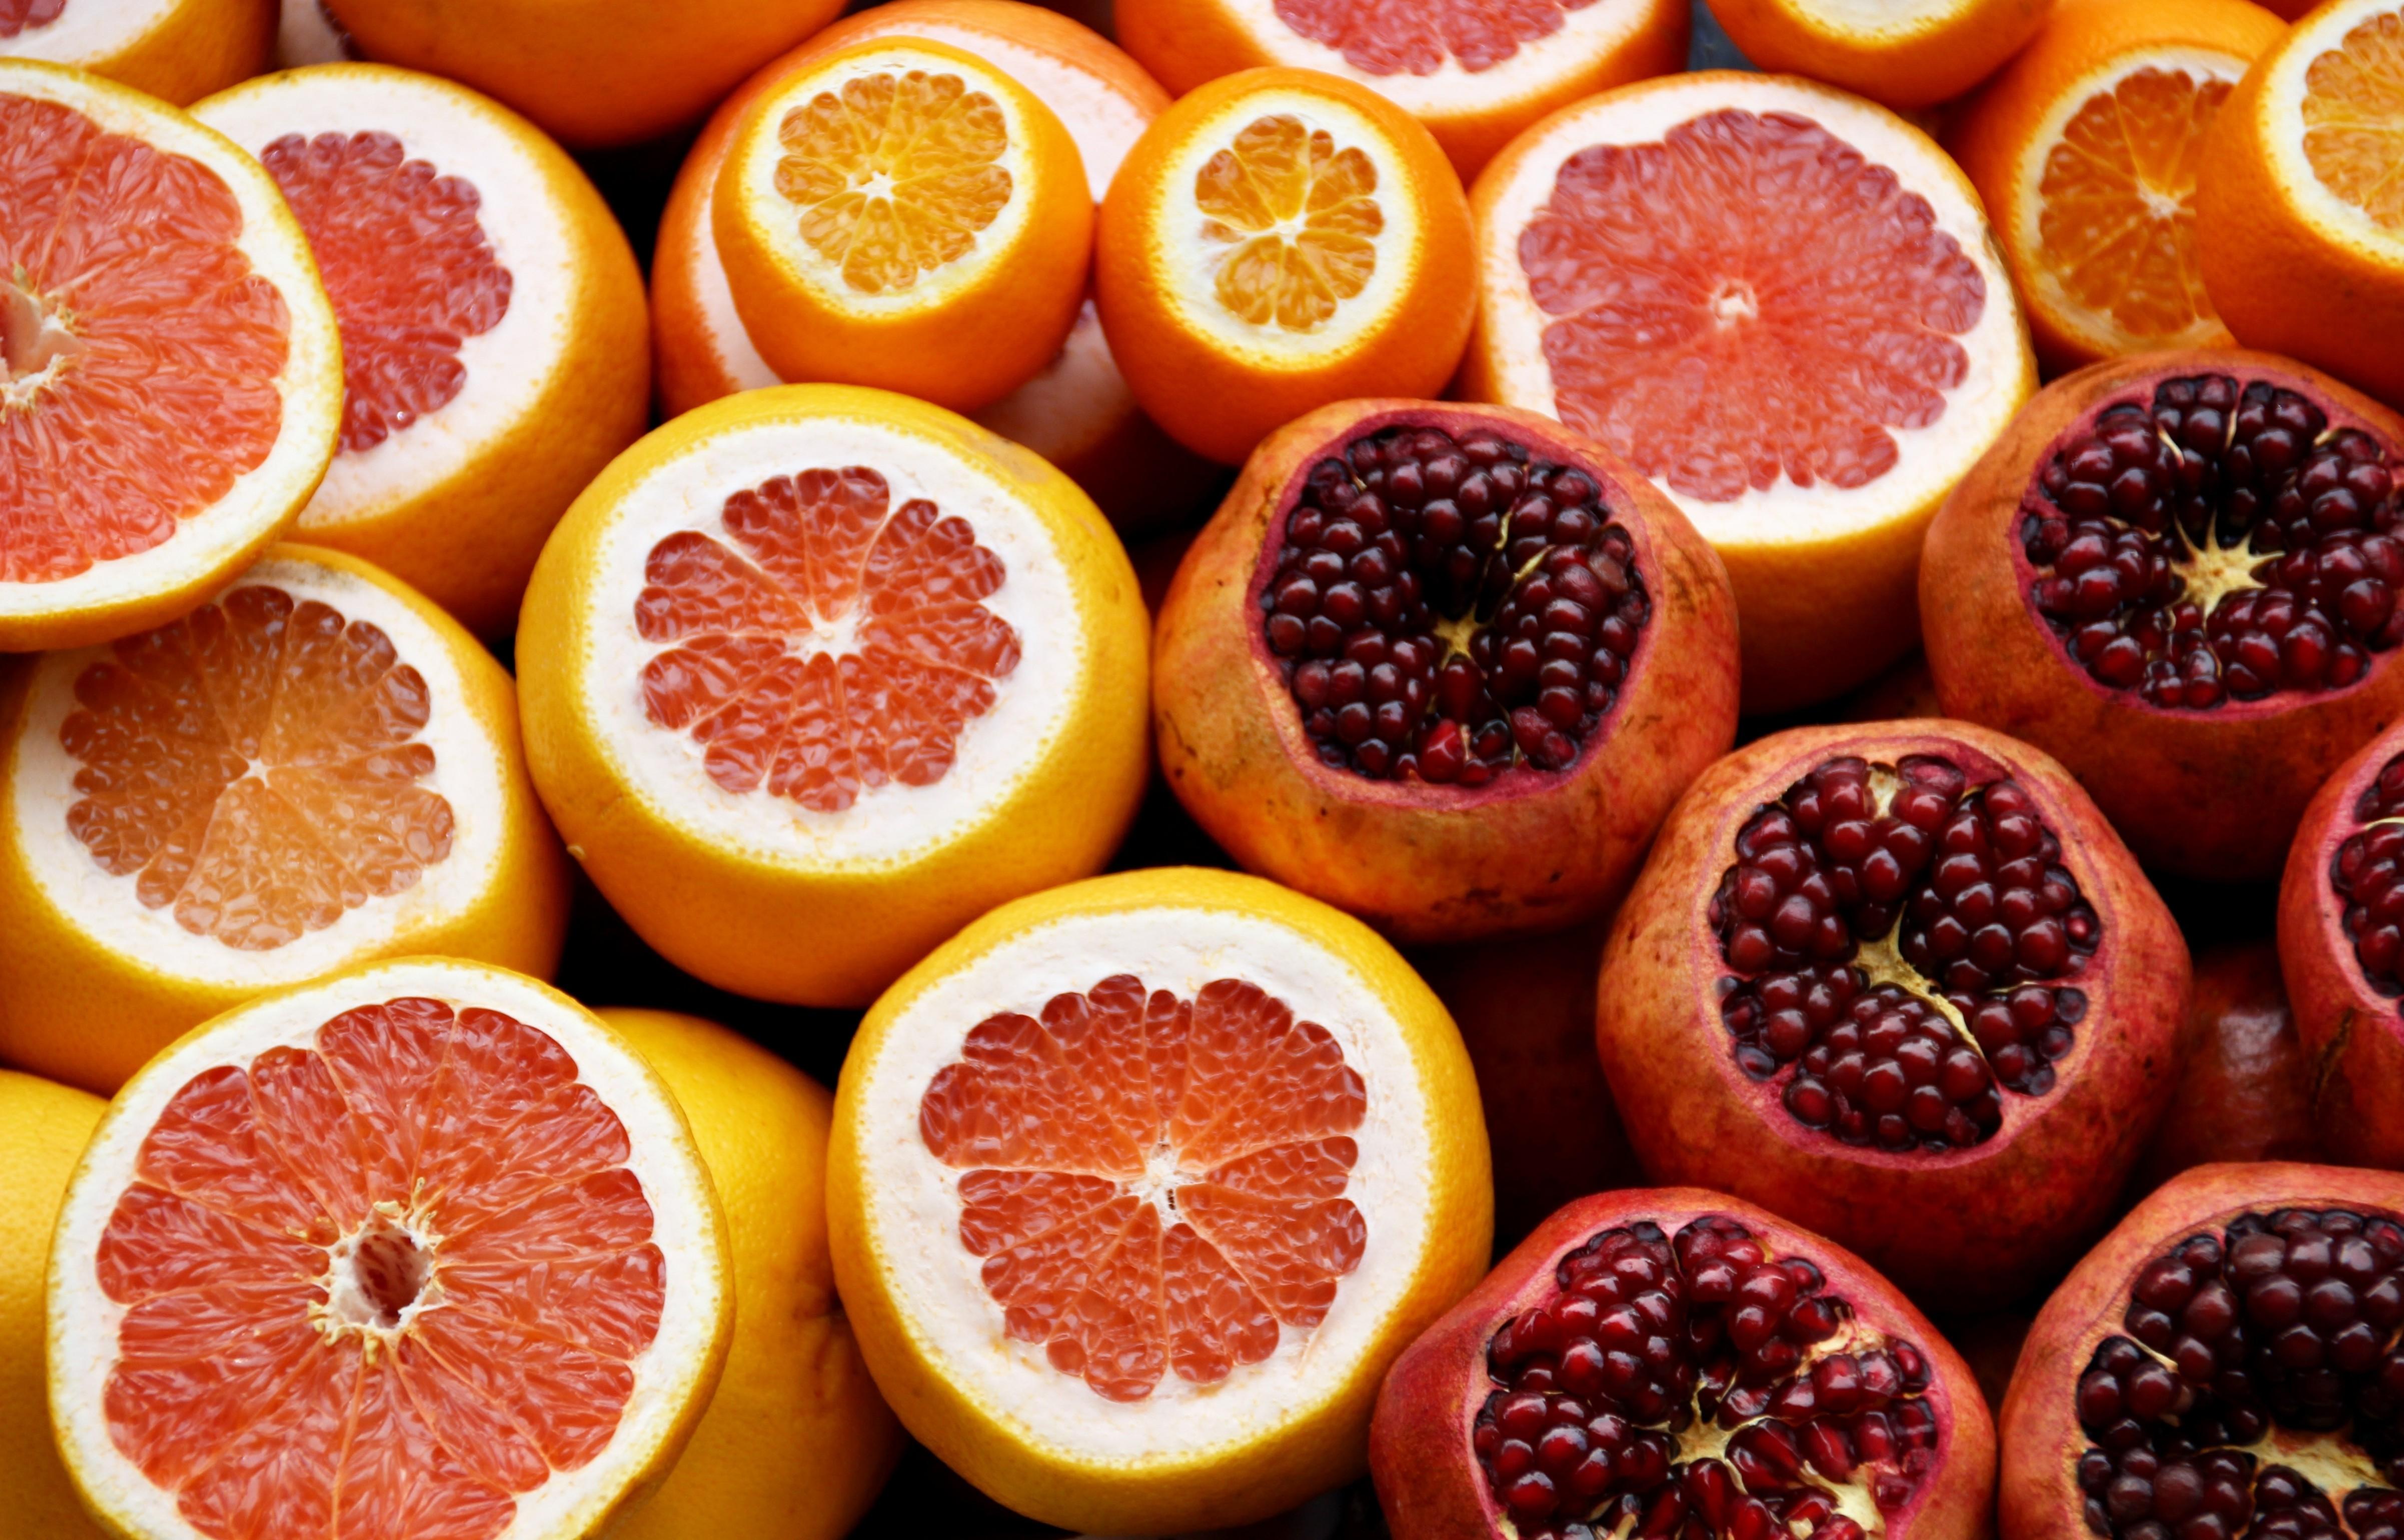 Download 4806x3079 Grapefruit, Citrus, Oranges, Pomegranate, Fruits